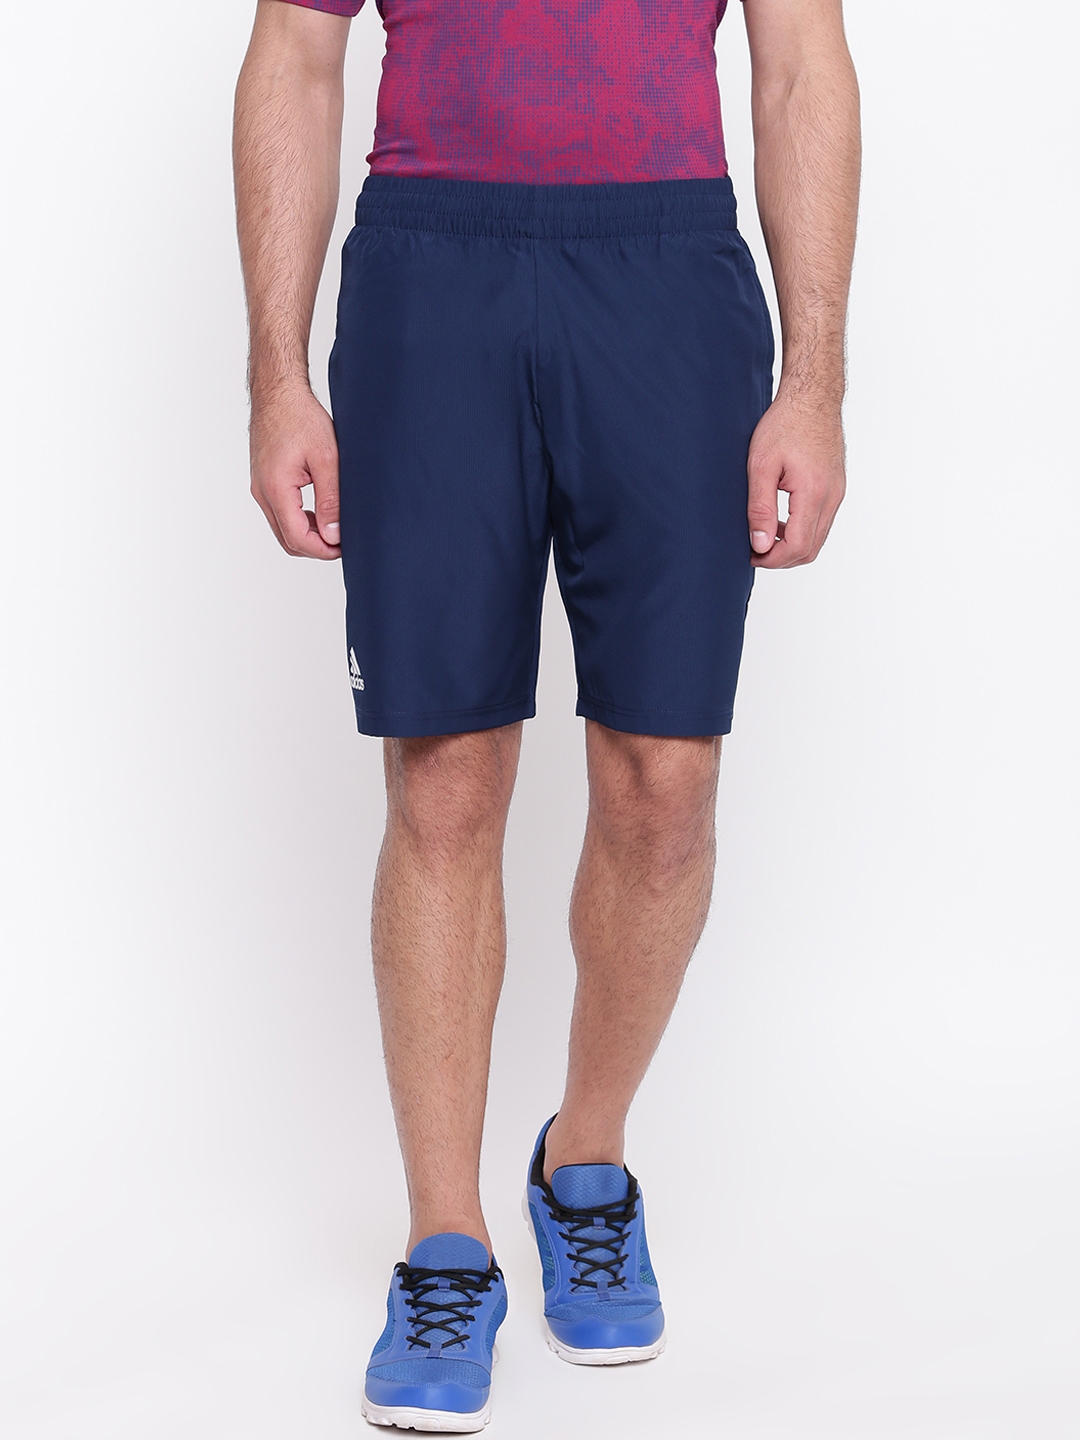 mens navy adidas shorts